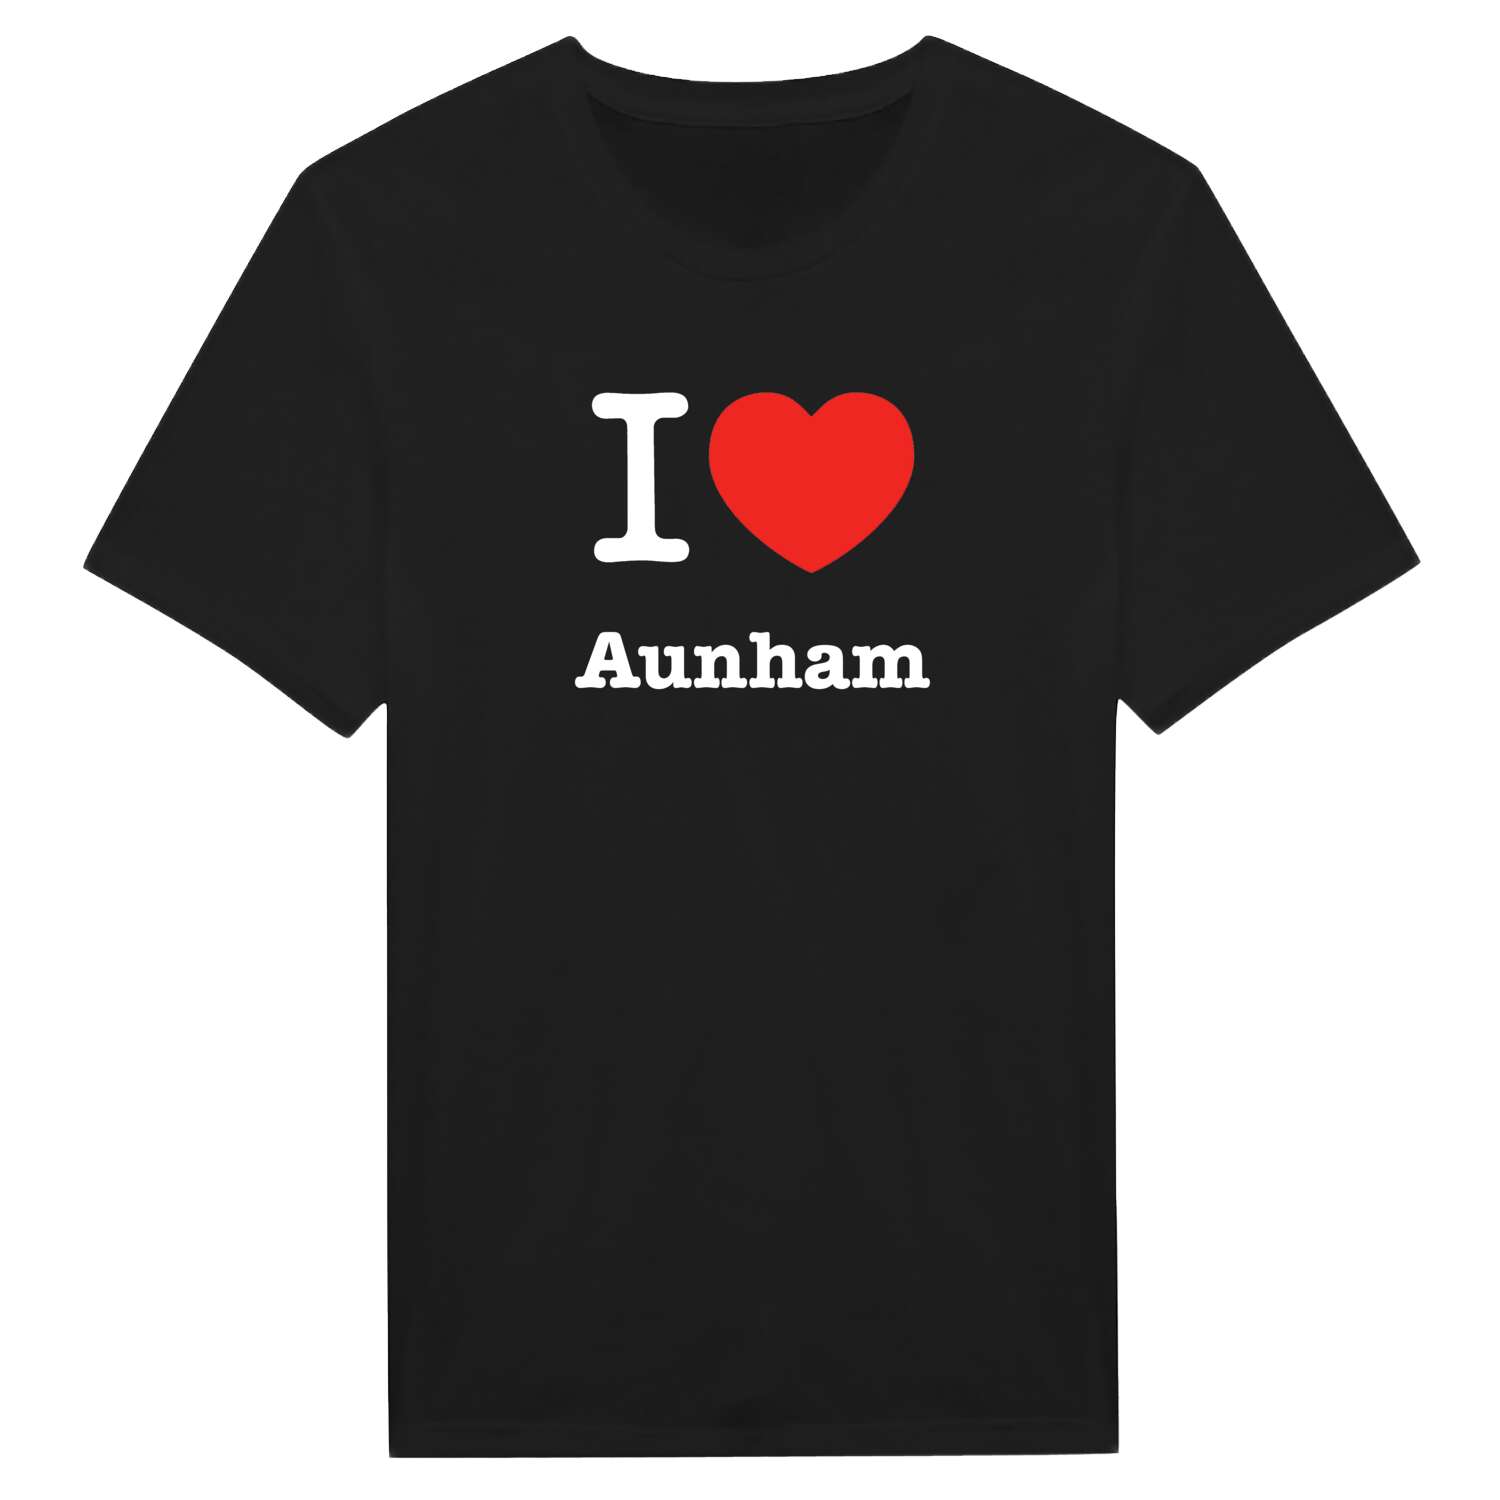 Aunham T-Shirt »I love«